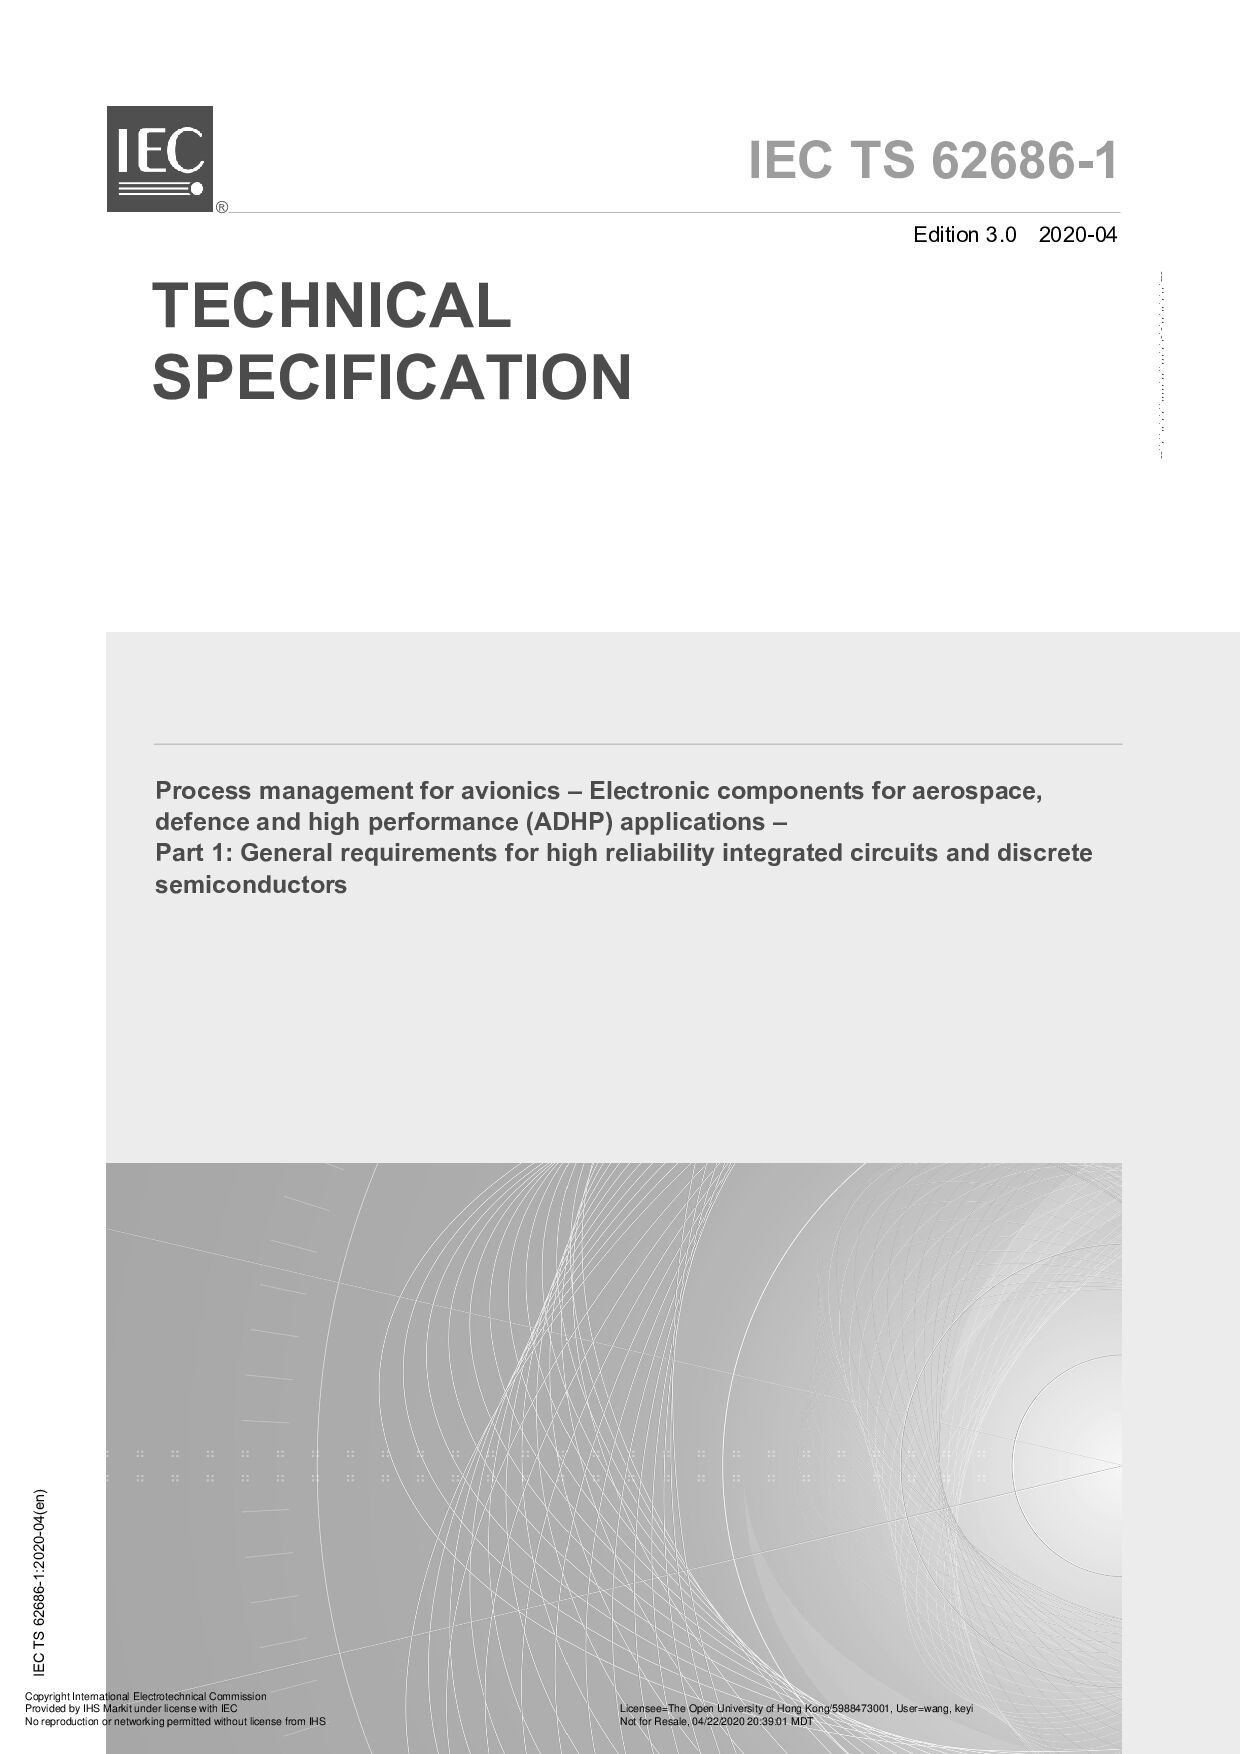 IEC TS 62686-1:2020